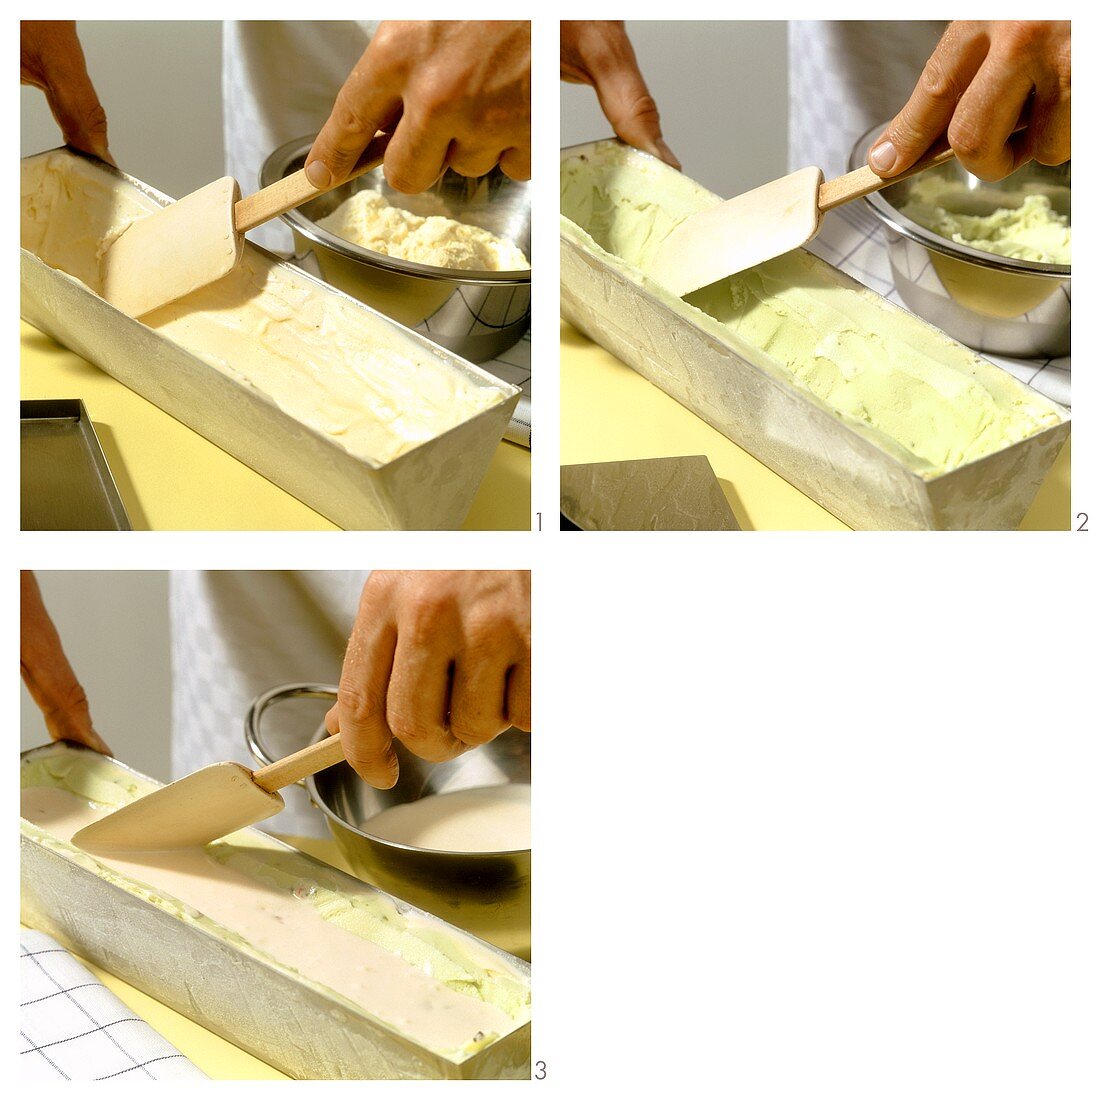 Making cassata alla napoletana